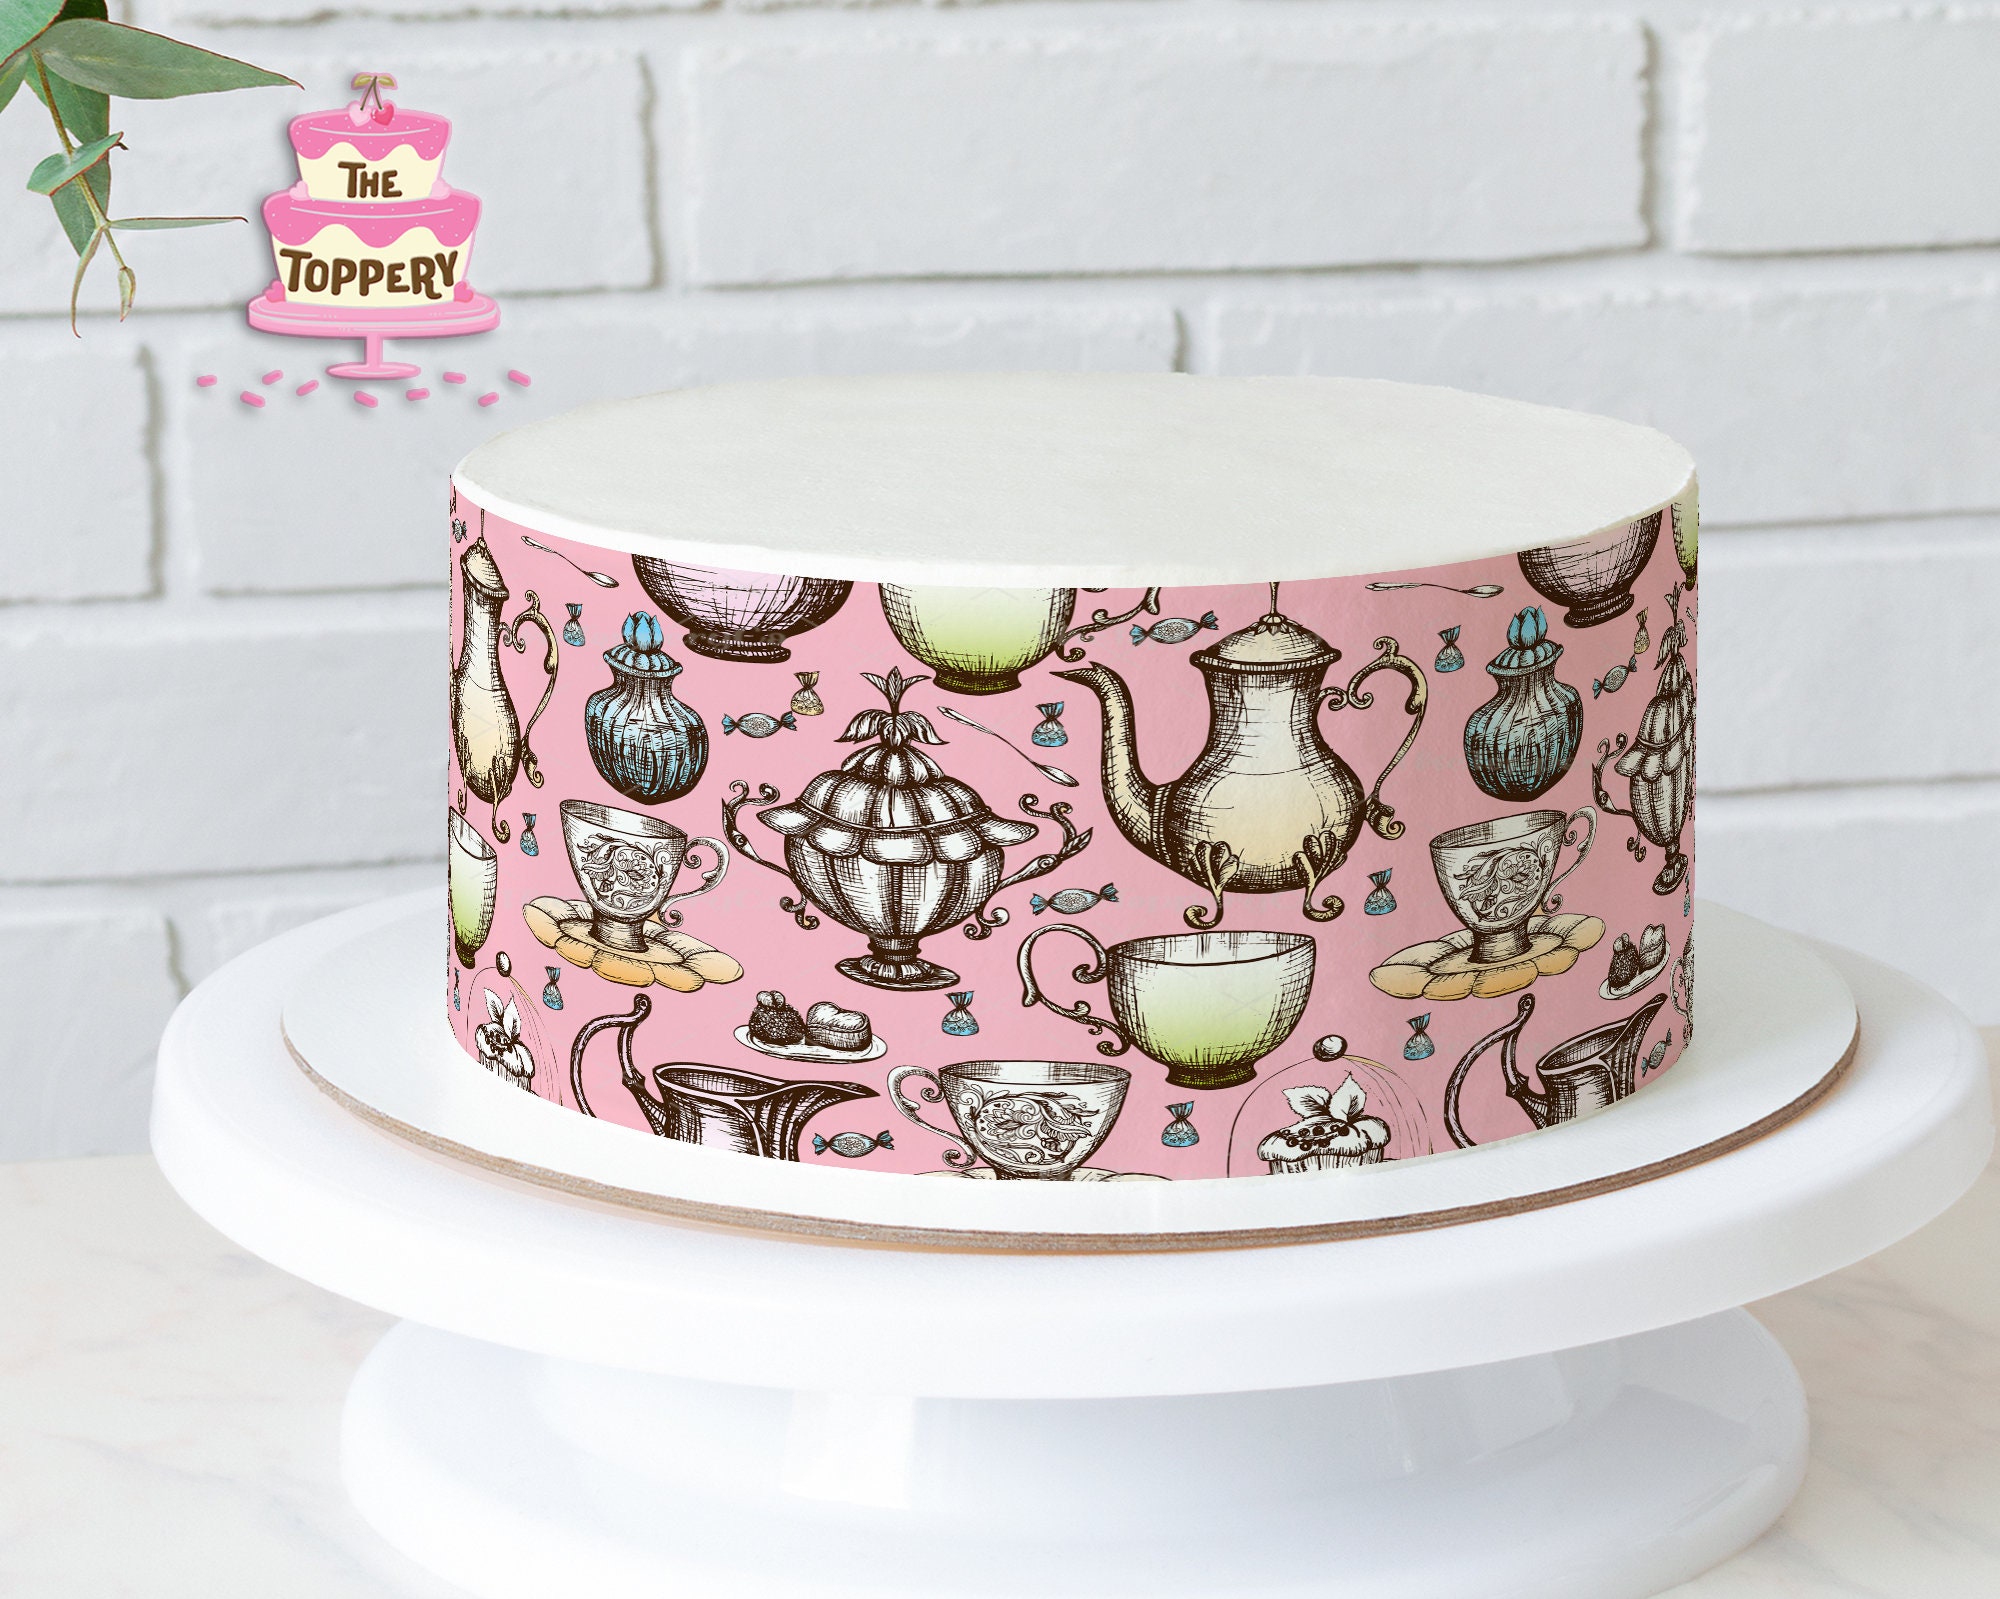 Round Truly Alice White Rabbit Tea Party Birthday Edible Cake